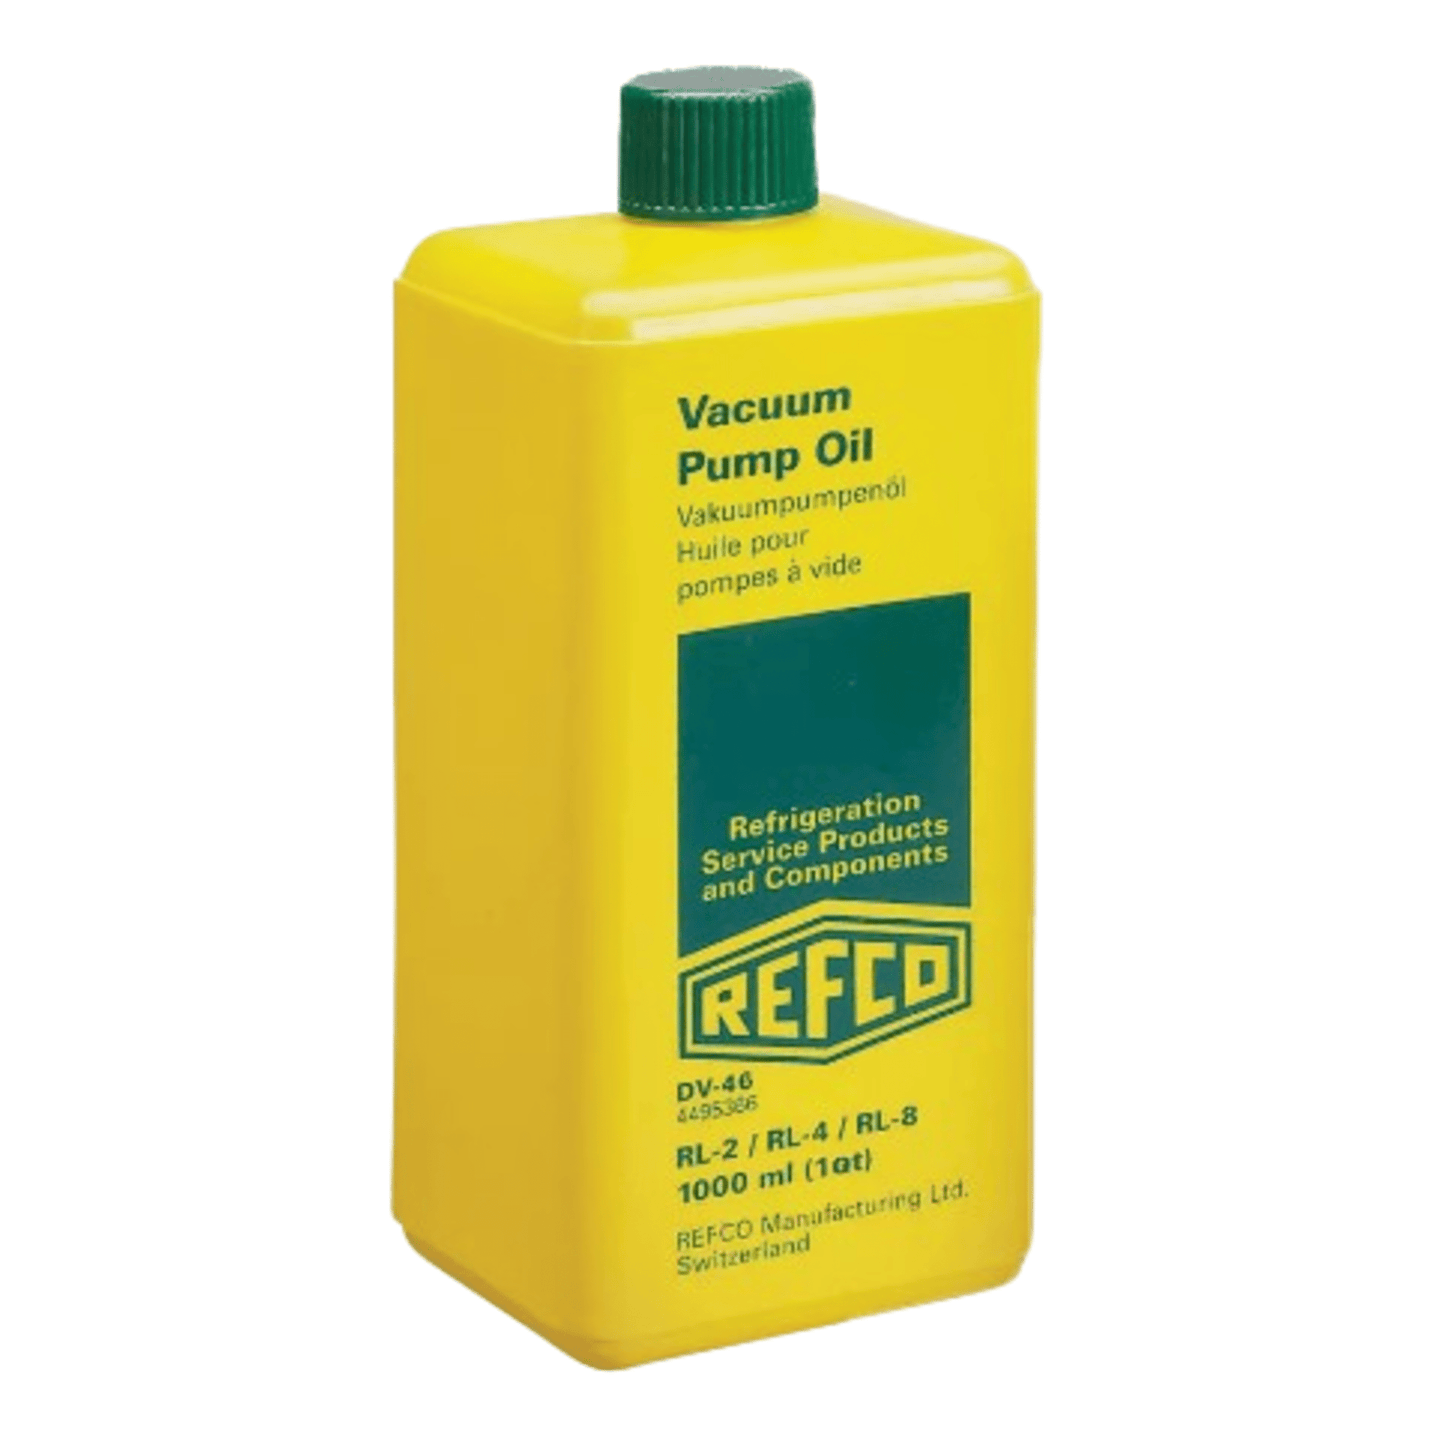 Refco DV-46, Vacuum pump oil, 1 quart